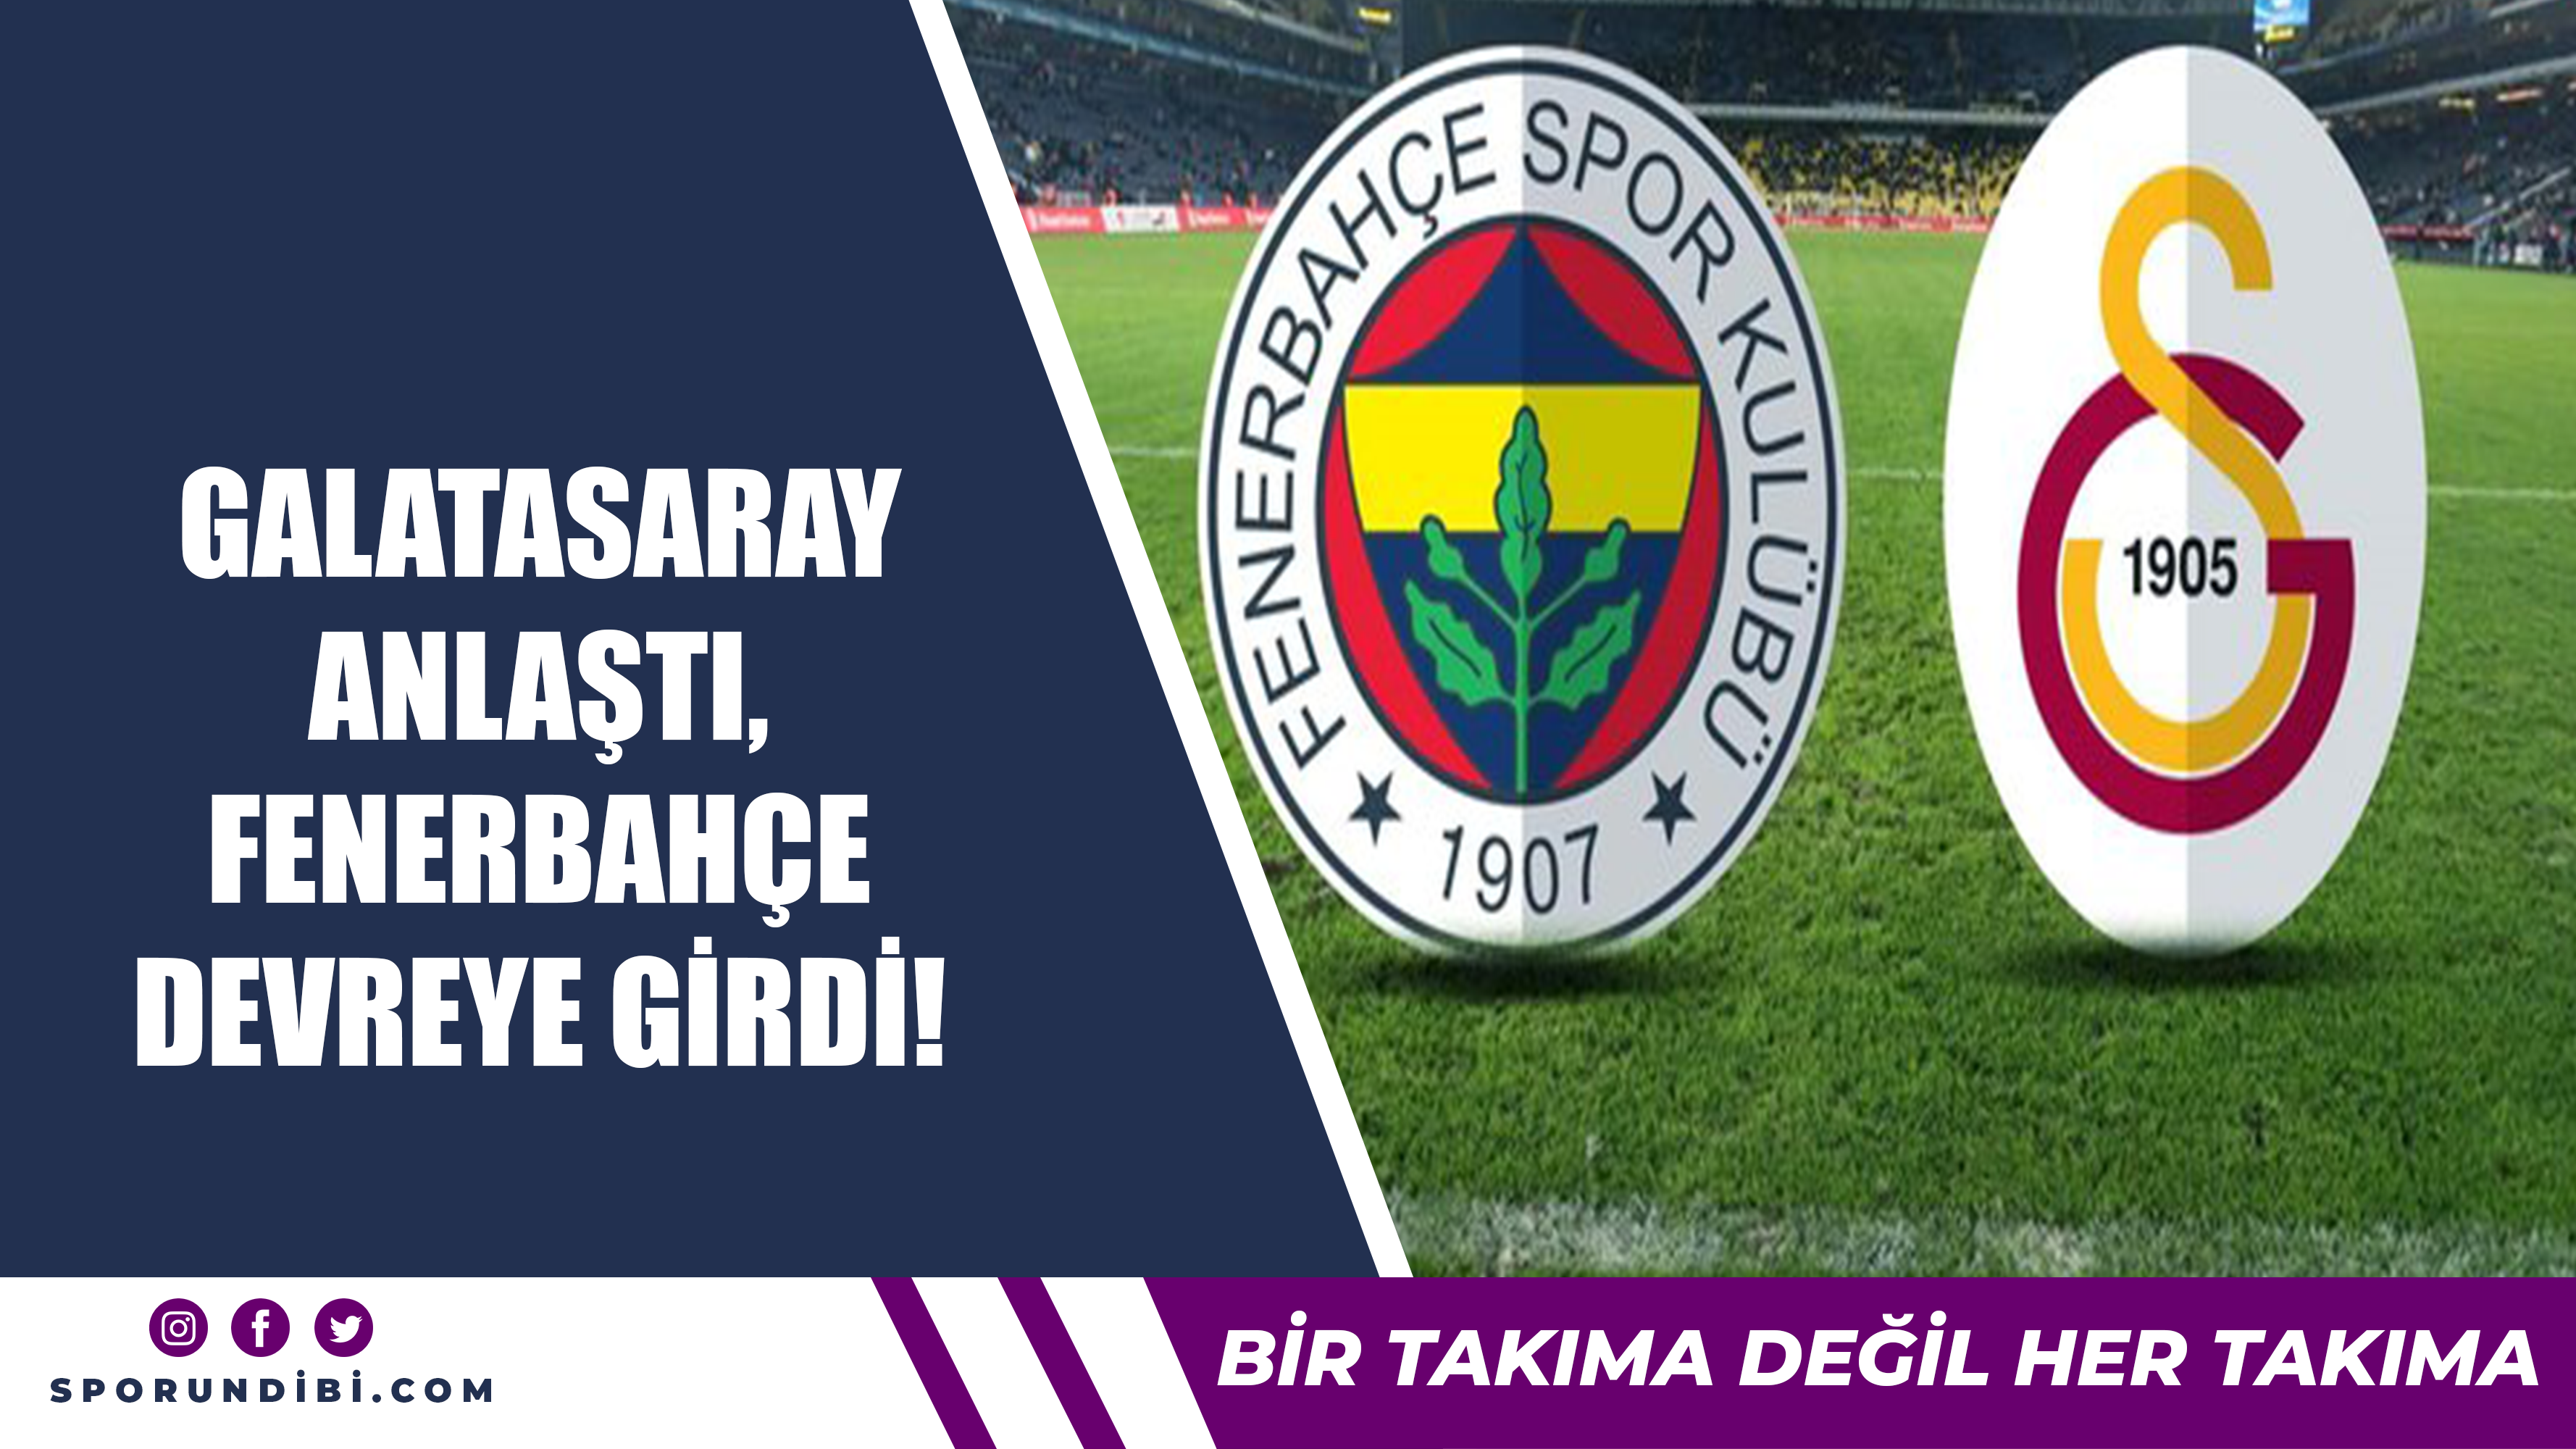 Galatasaray anlaştı, Fenerbahçe devreye girdi!